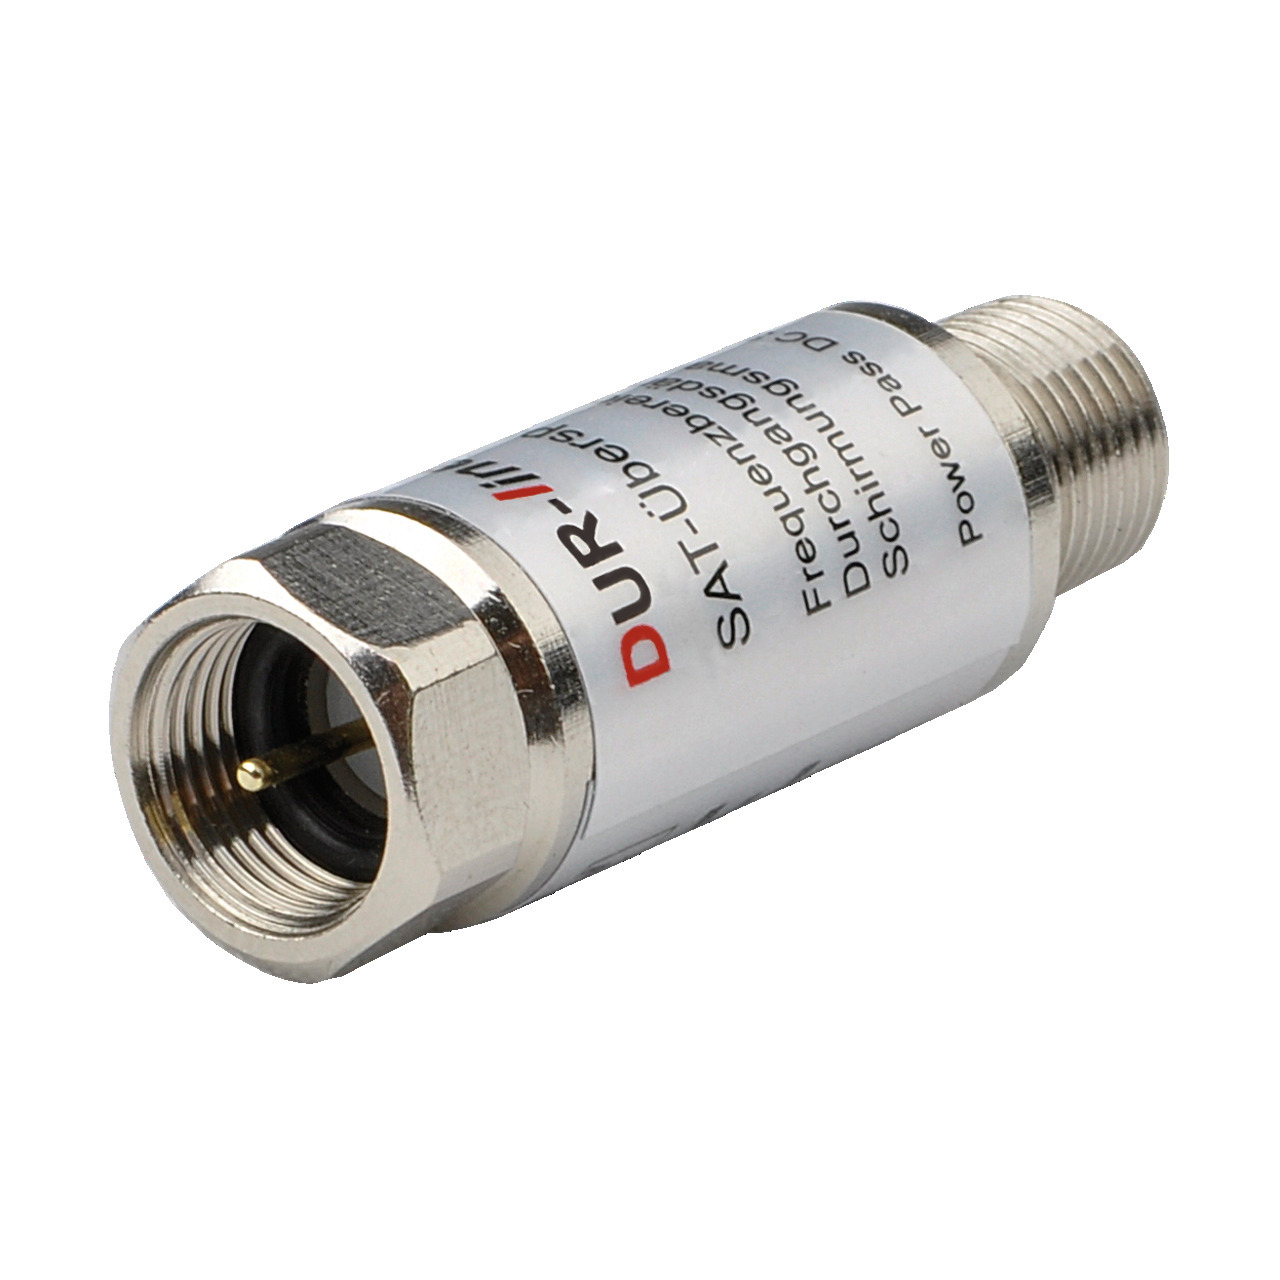 DUR-line Überspannungs-/Blitzschutz DLBS 3001- 0-3 dB Durchgangsdämpfung- passend zu Erdungsblöcken